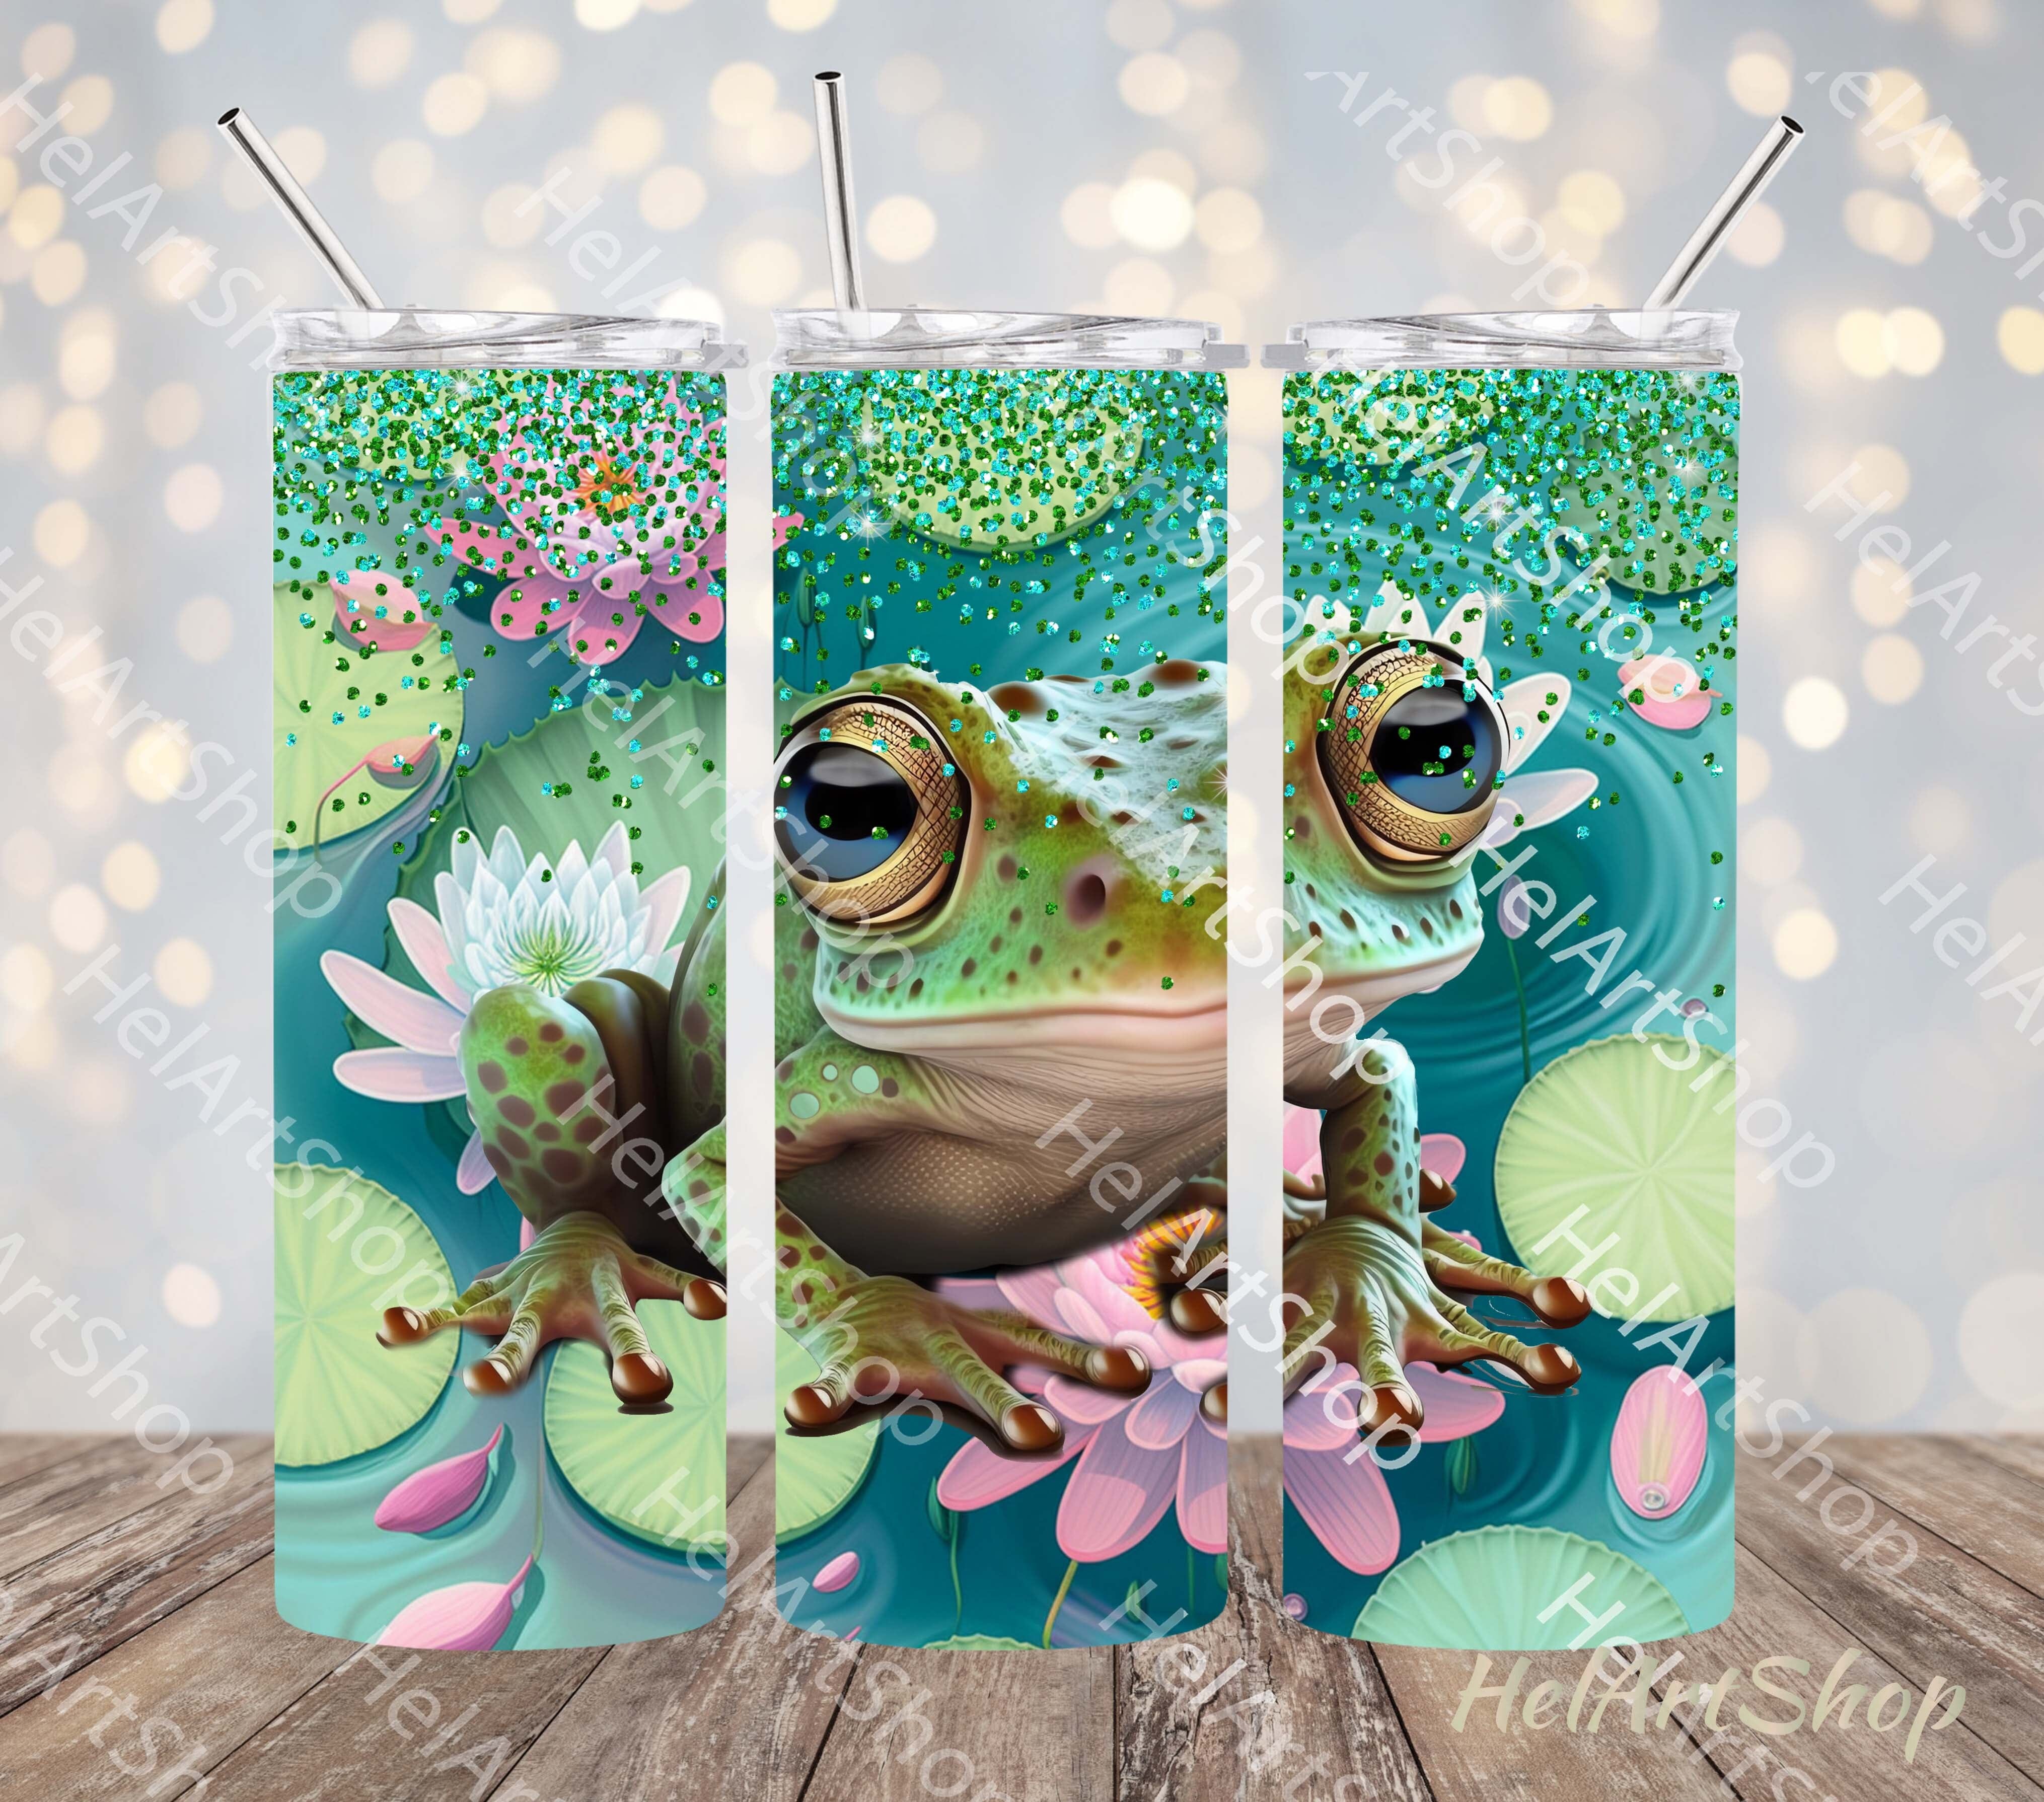 Frog 20 oz Tumbler Wrap Design Digital Download, Frog Tumbler Wrap Design,  Frog Floral Tumbler Sublimation - So Fontsy